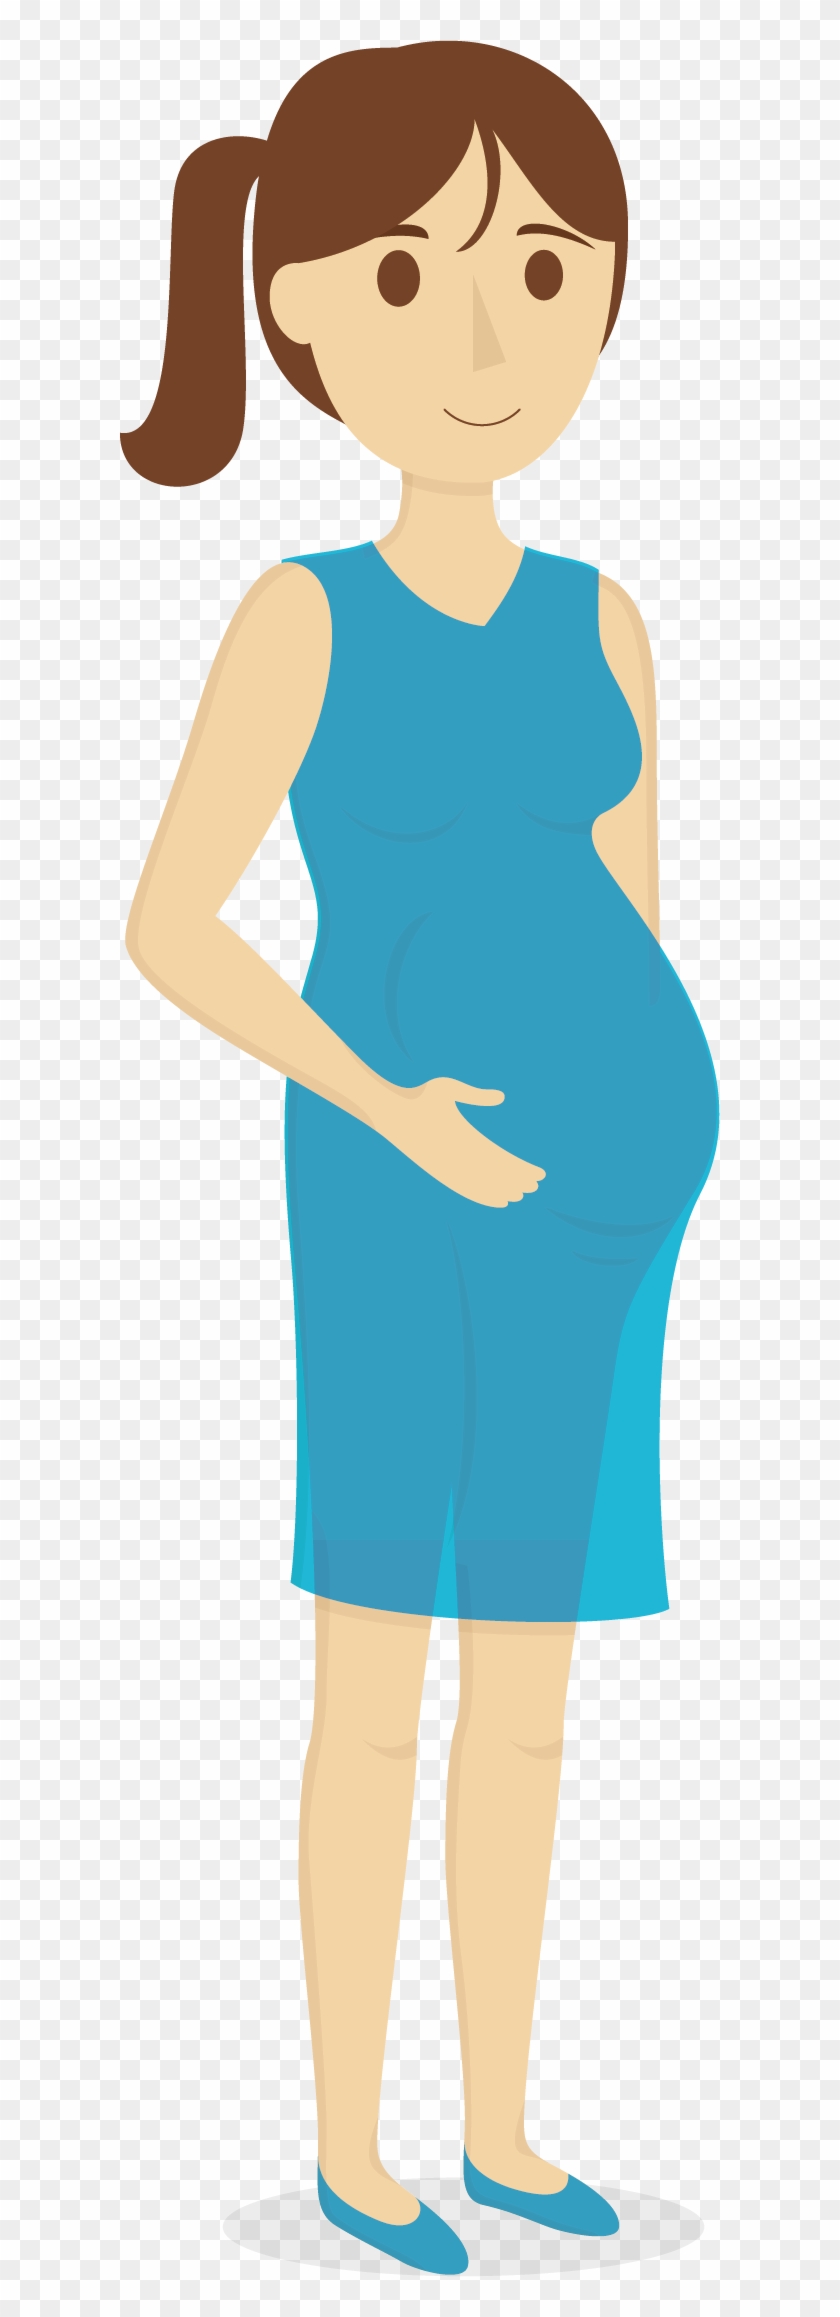 Pregnancy U5b55u5987 Thumb Clip Art - Vector Graphics #723550